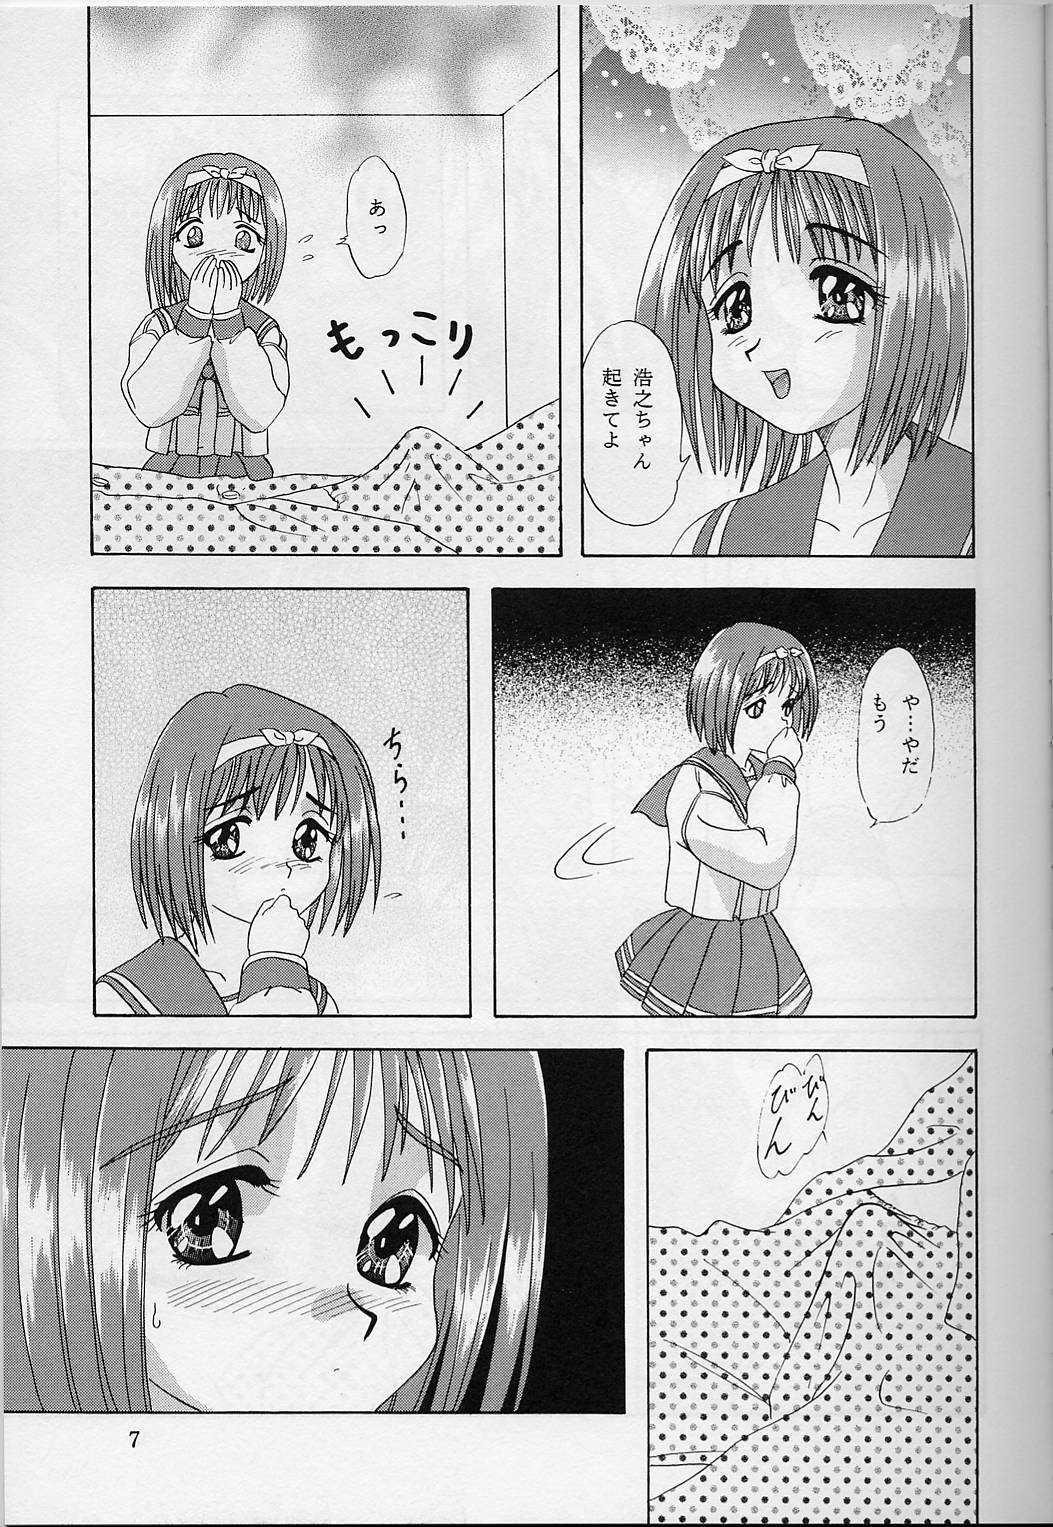 Threesome Lunch Box 33 - Happa no Shizuku - To heart Shecock - Page 6